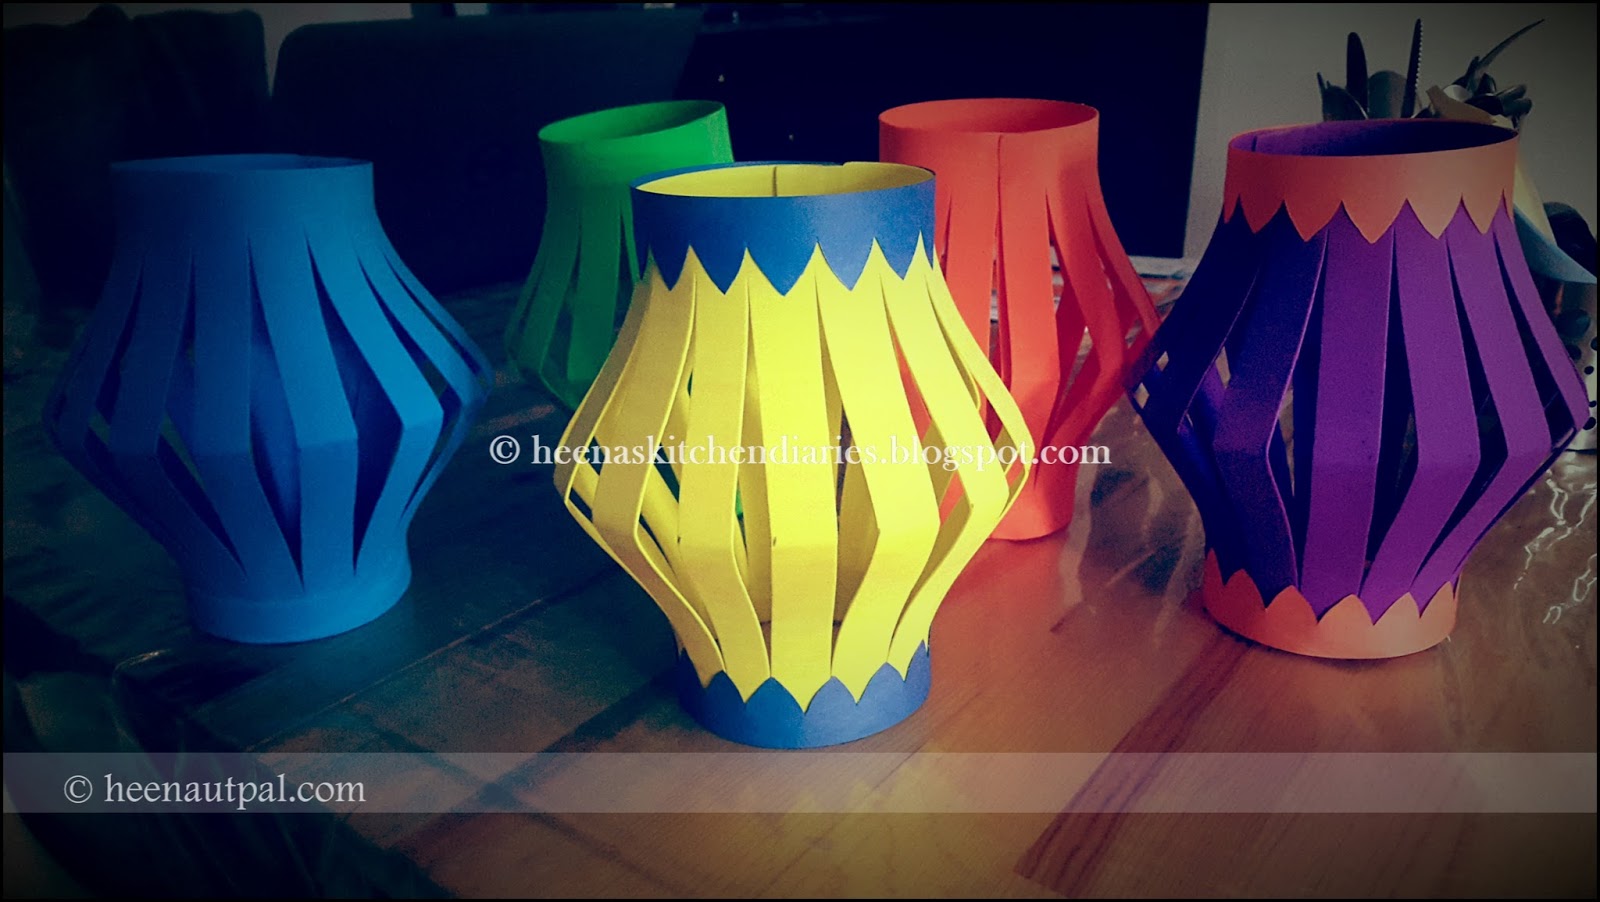 Heena's Kitchen Diaries: Homemade Diwali Kandil's / Lanterns